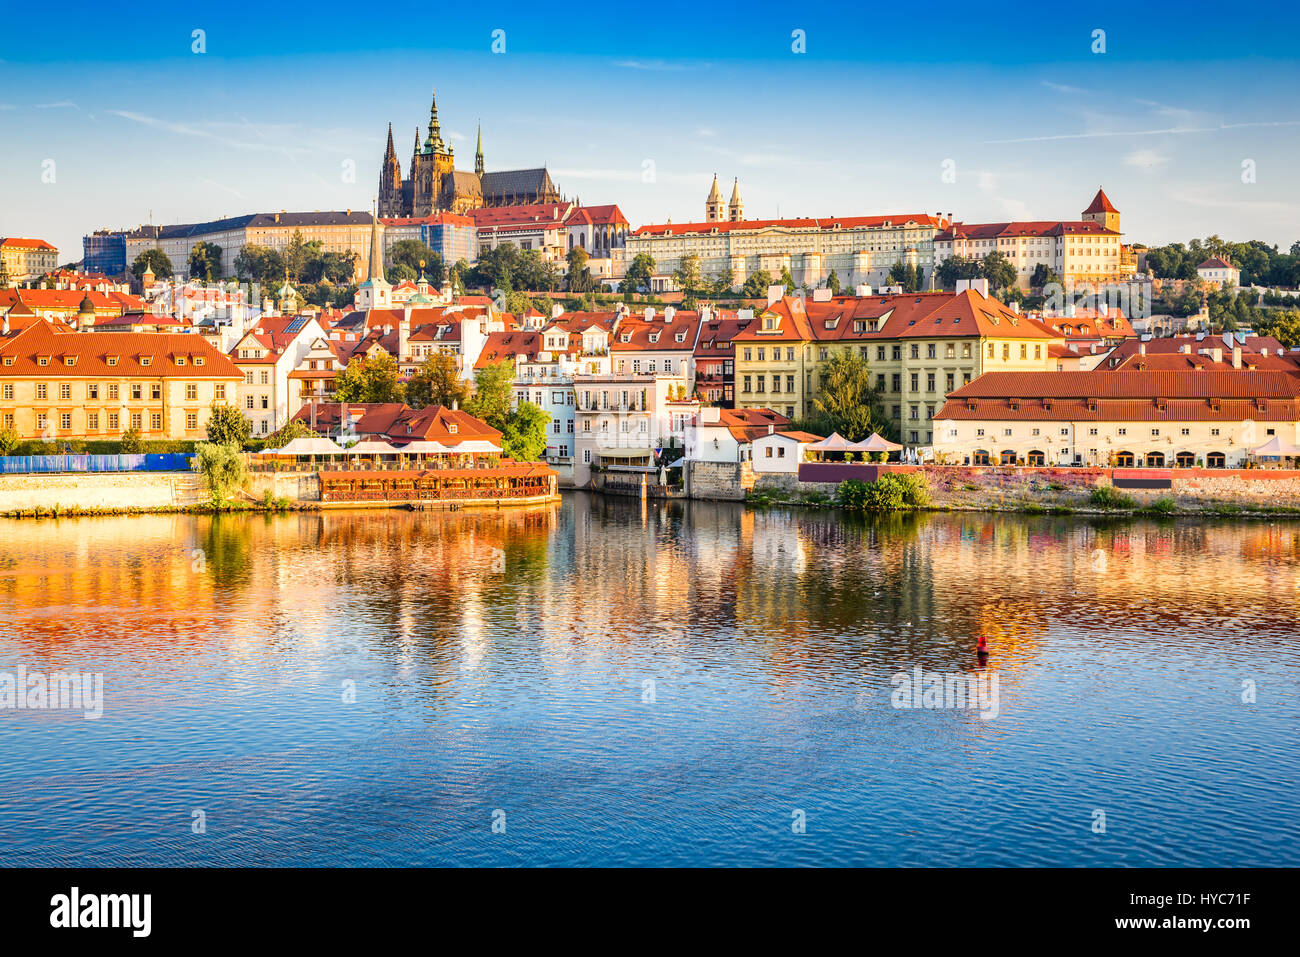 Praga, Bohemia, República Checa. hradcany es el castillo de Praga, con iglesias, capillas, salas y torres de cada período de su historia. Foto de stock